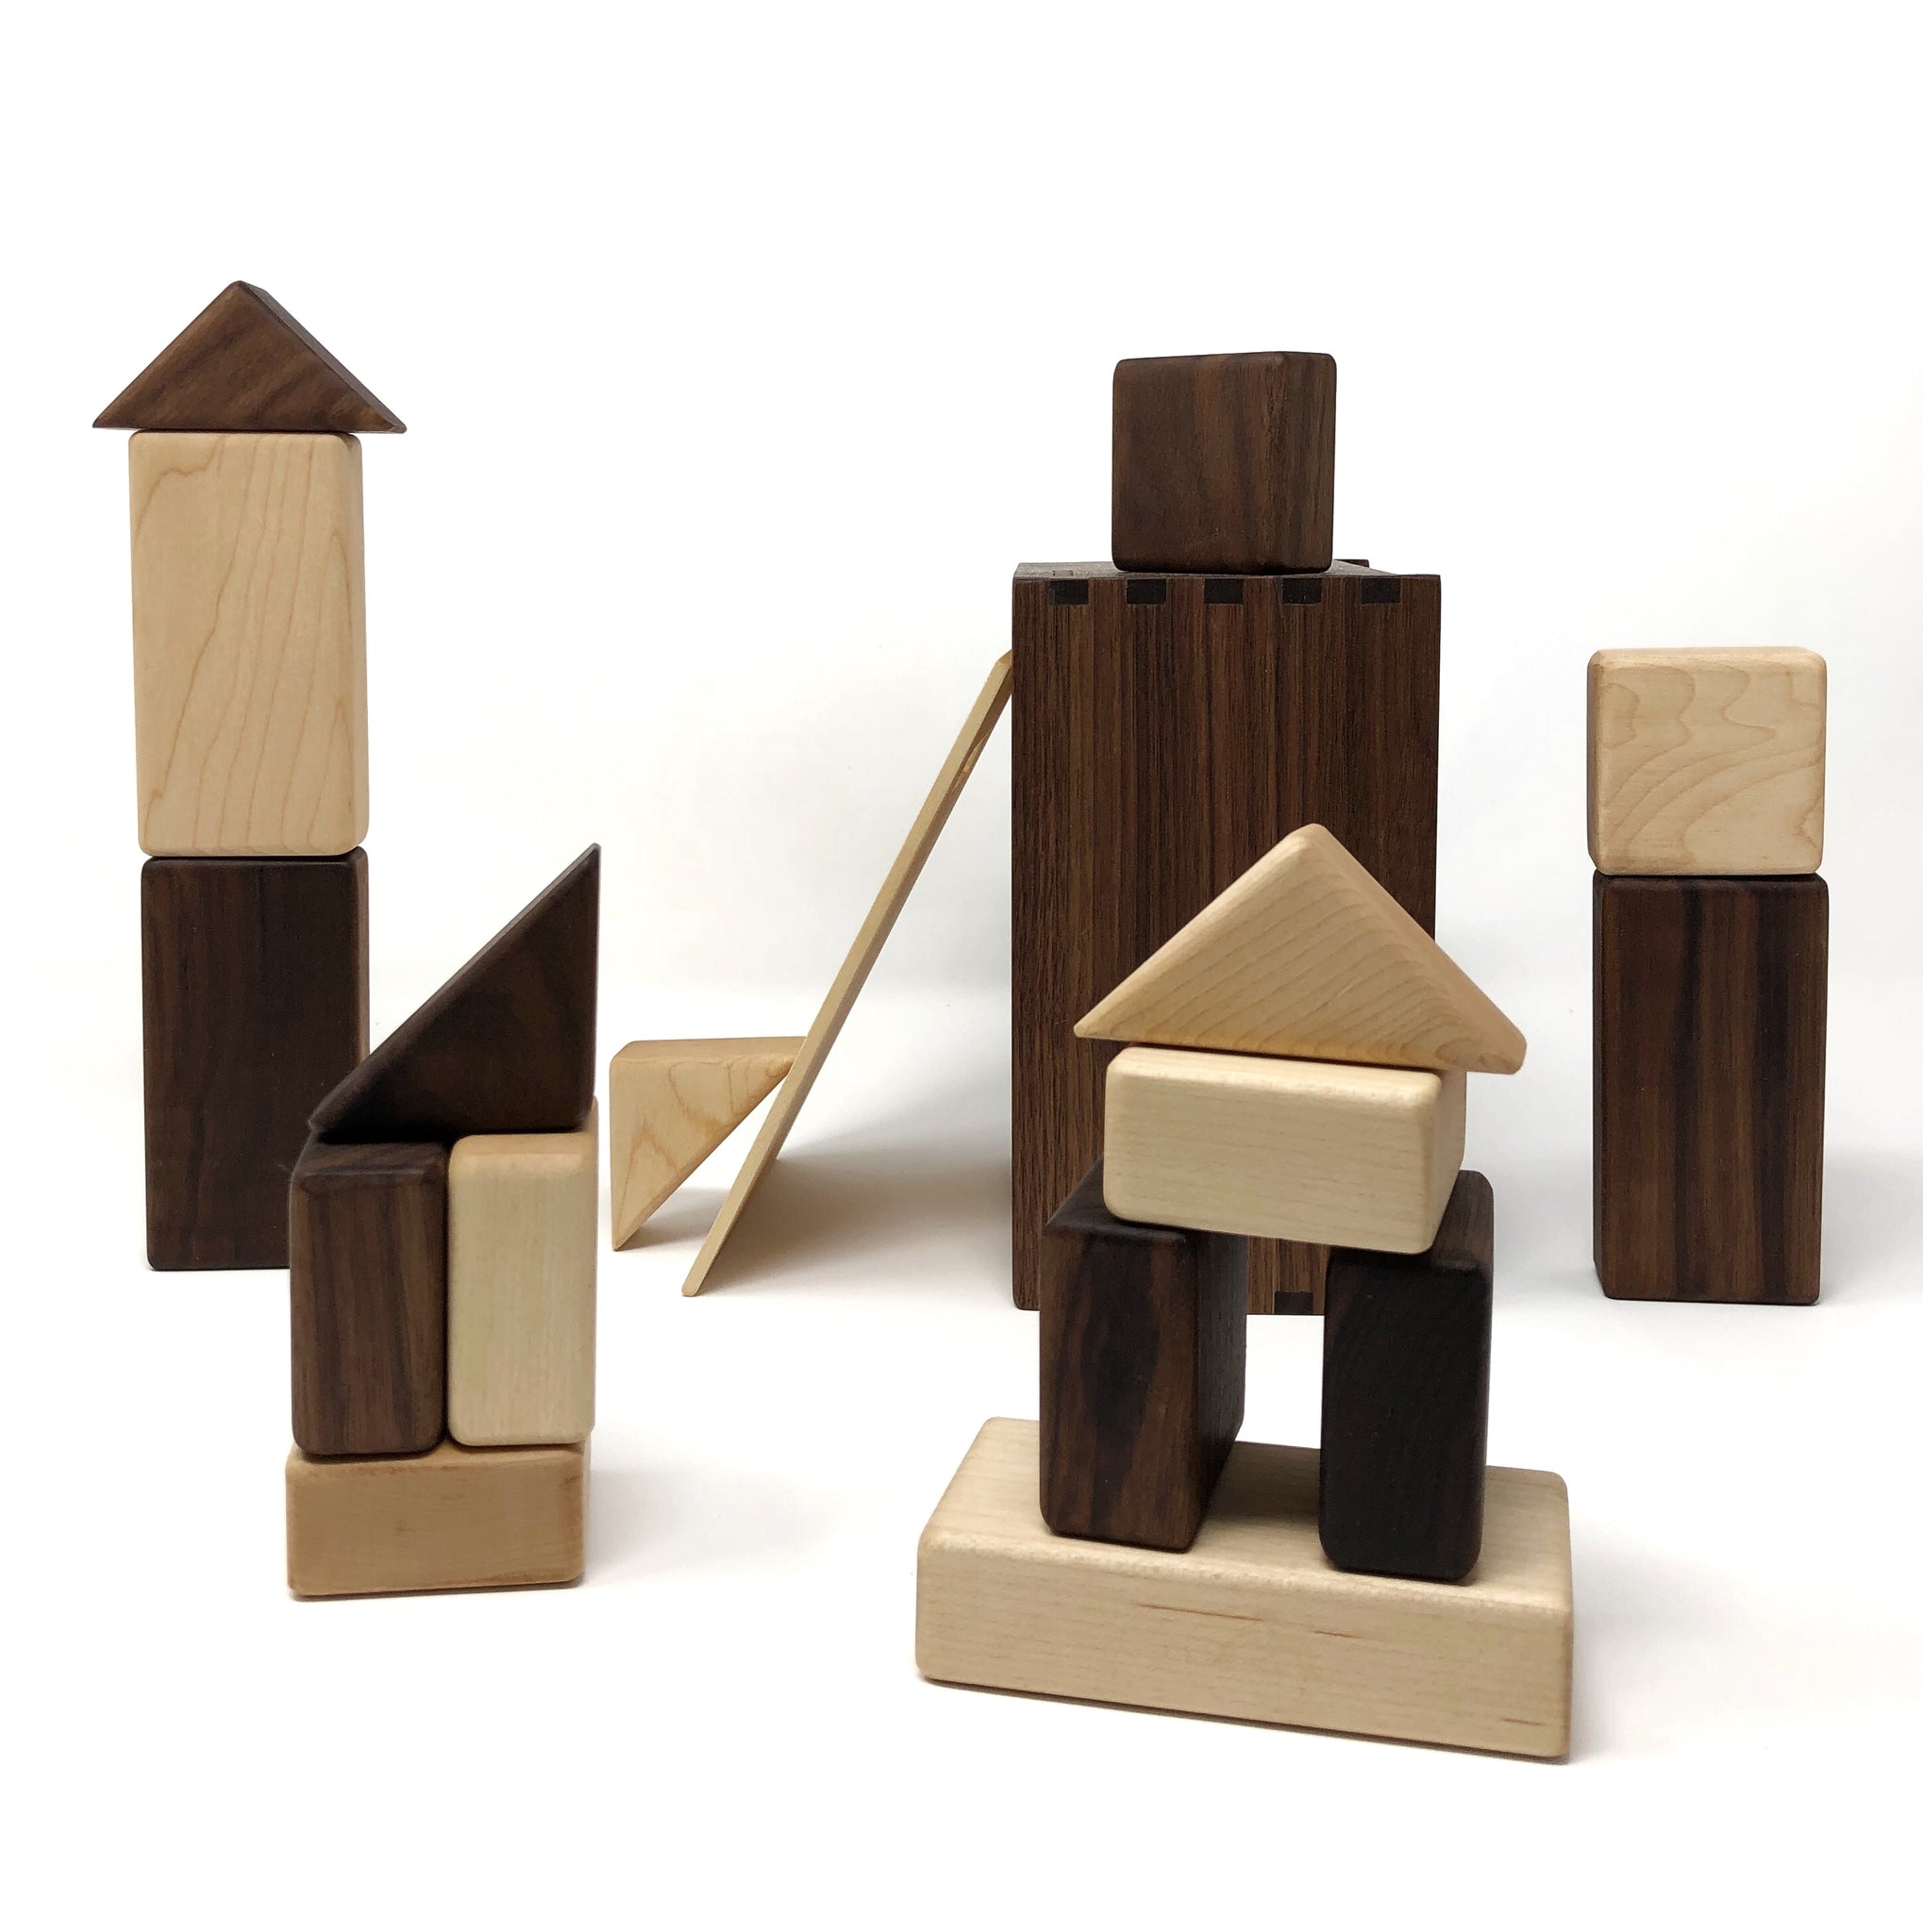 building blocks for children